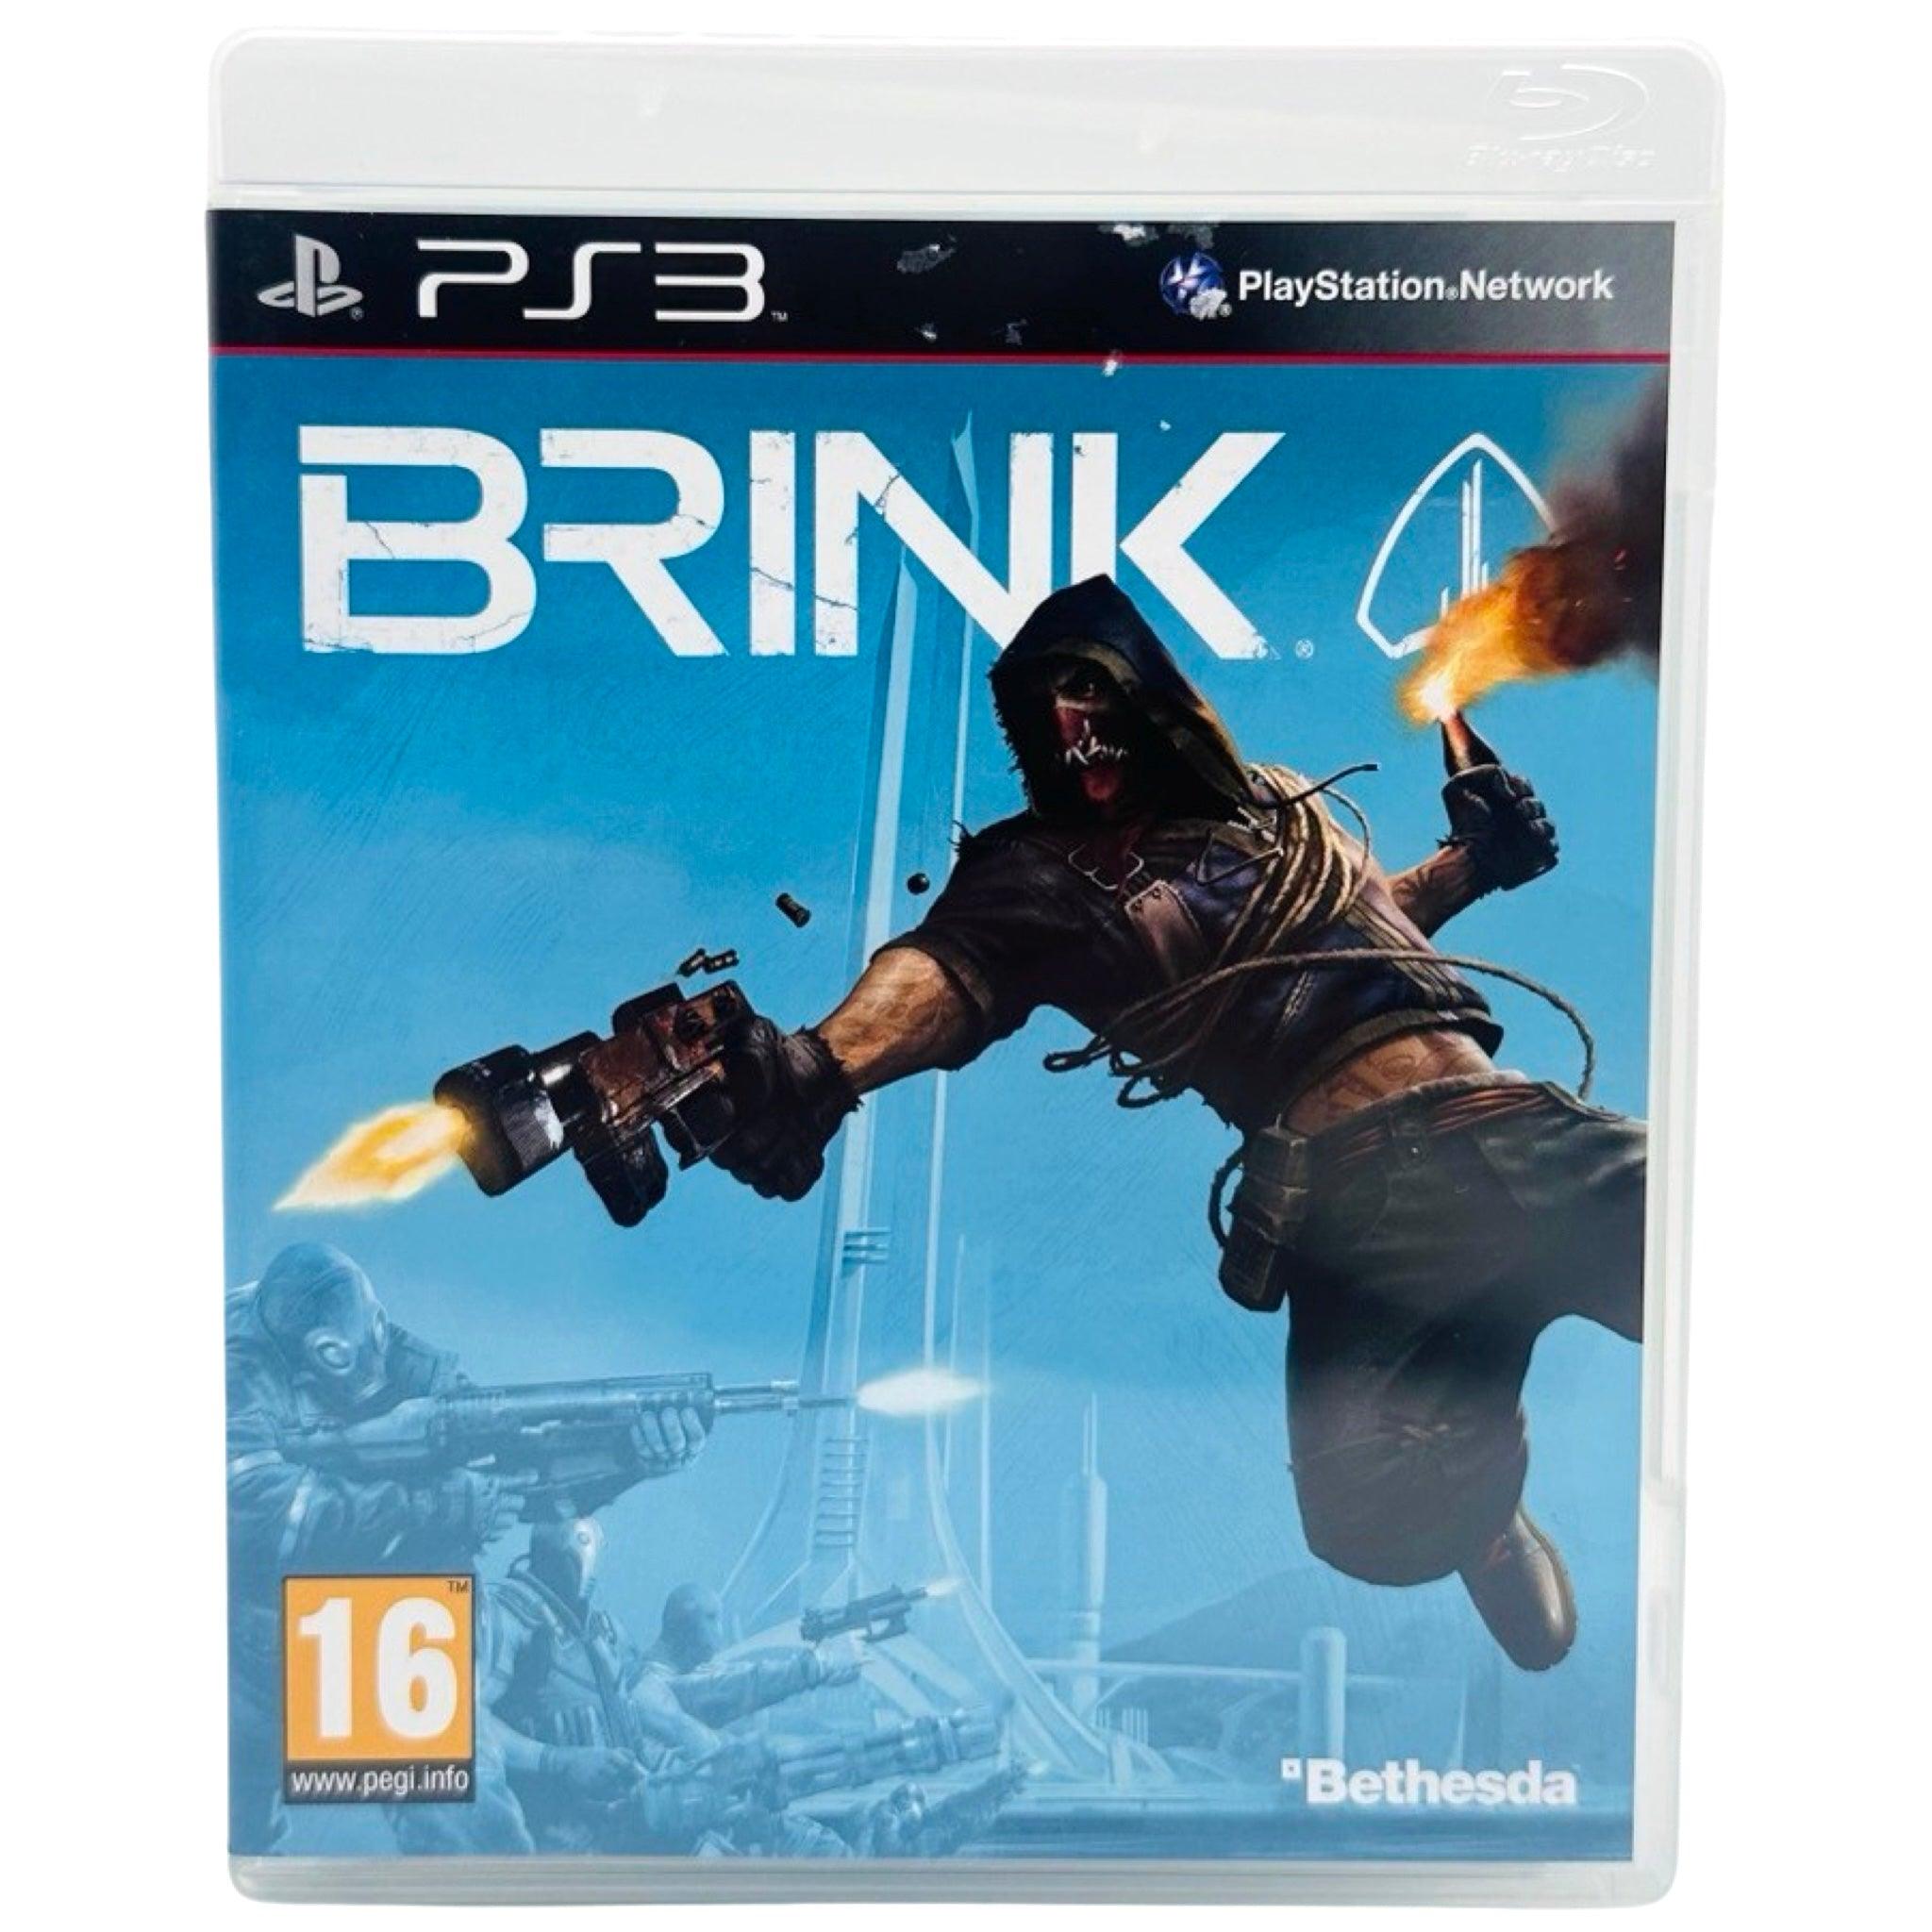 PS3: Brink - RetroGaming.no